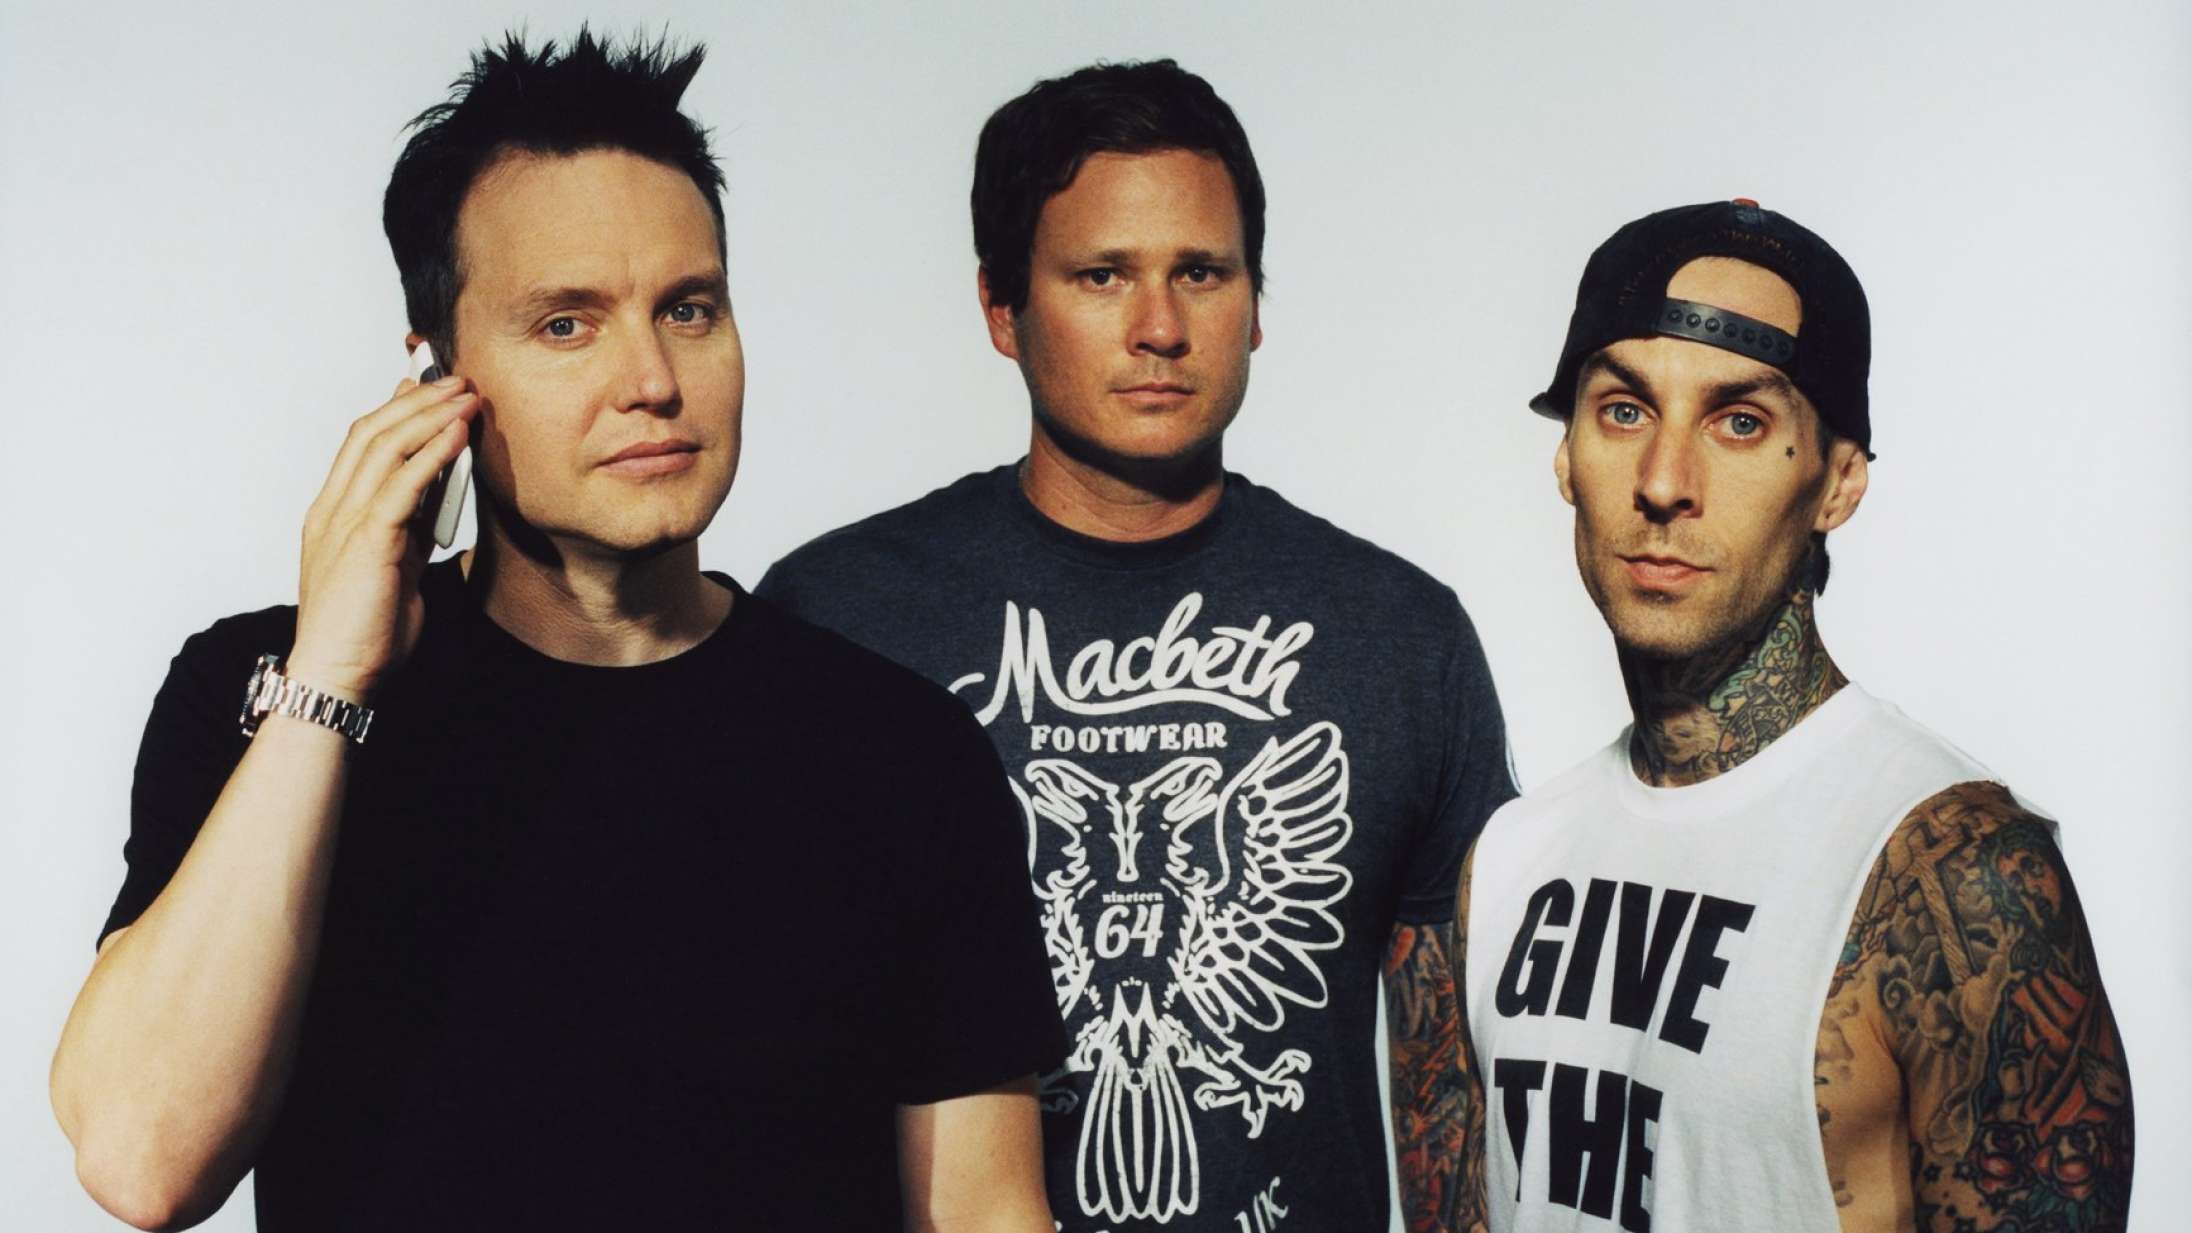 Blink-182 i Royal Arena: Det er ikke bare en rockstjerne, der gæster Danmark – det er en UFO-forsker